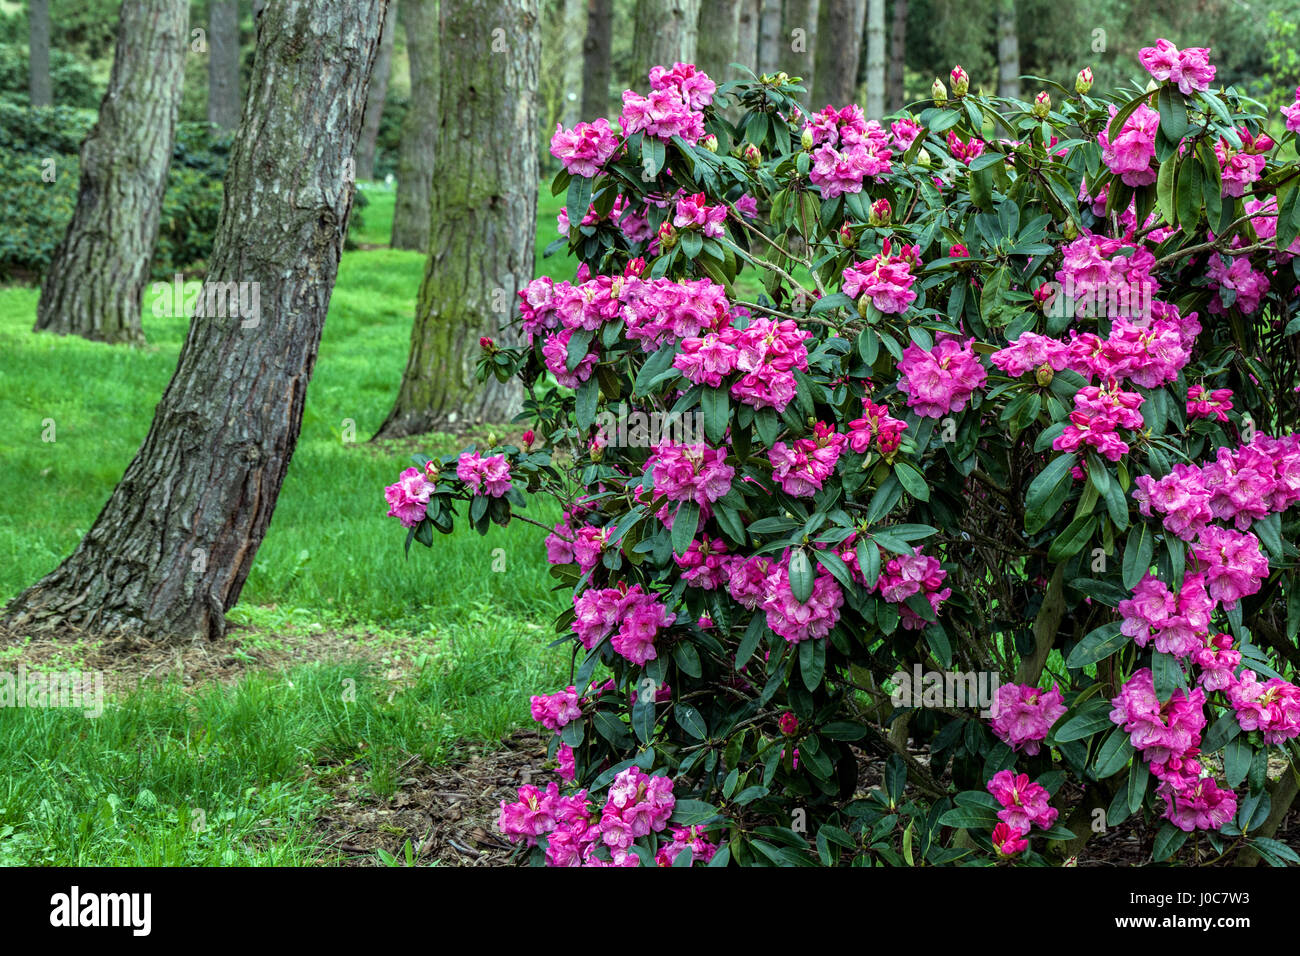 Rhododendron "Loket", arbusti, viola, fioritura, fiori, foresta, impianto, bosco, tronchi da giardino Foto Stock